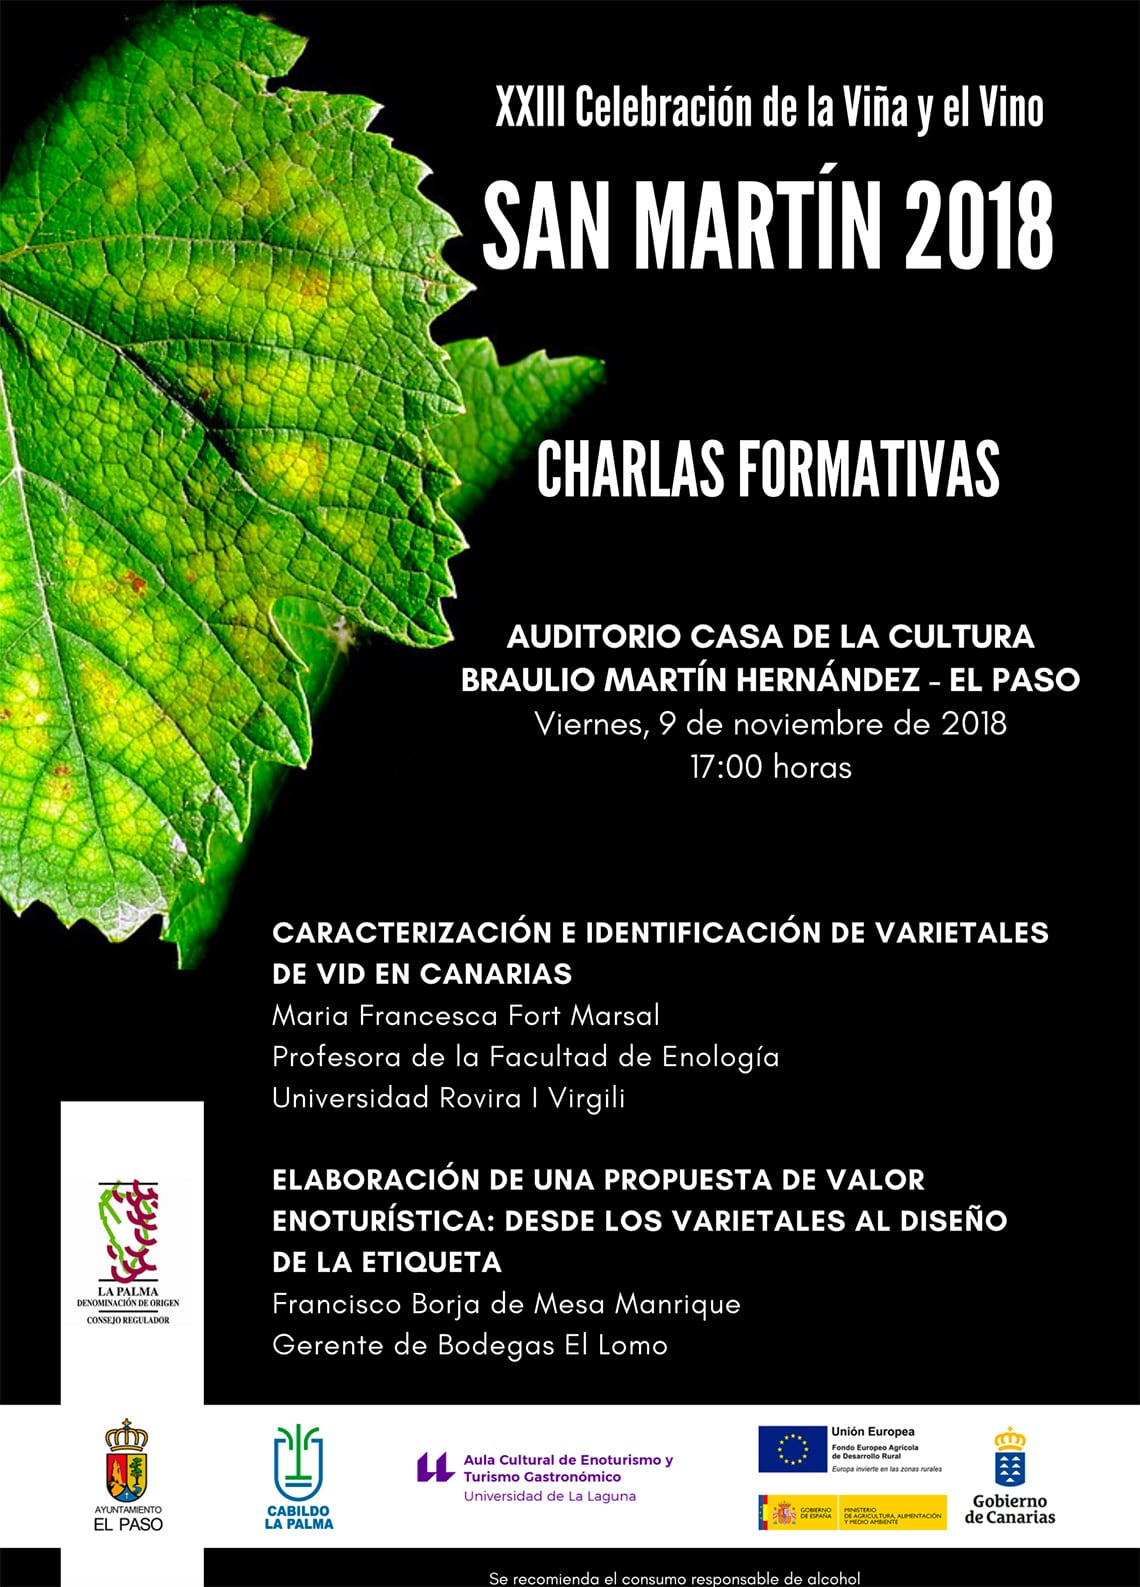 Charlas formativas con motivo de la XXIII Celebración de la Viña y el Vino “San Martín 2018”